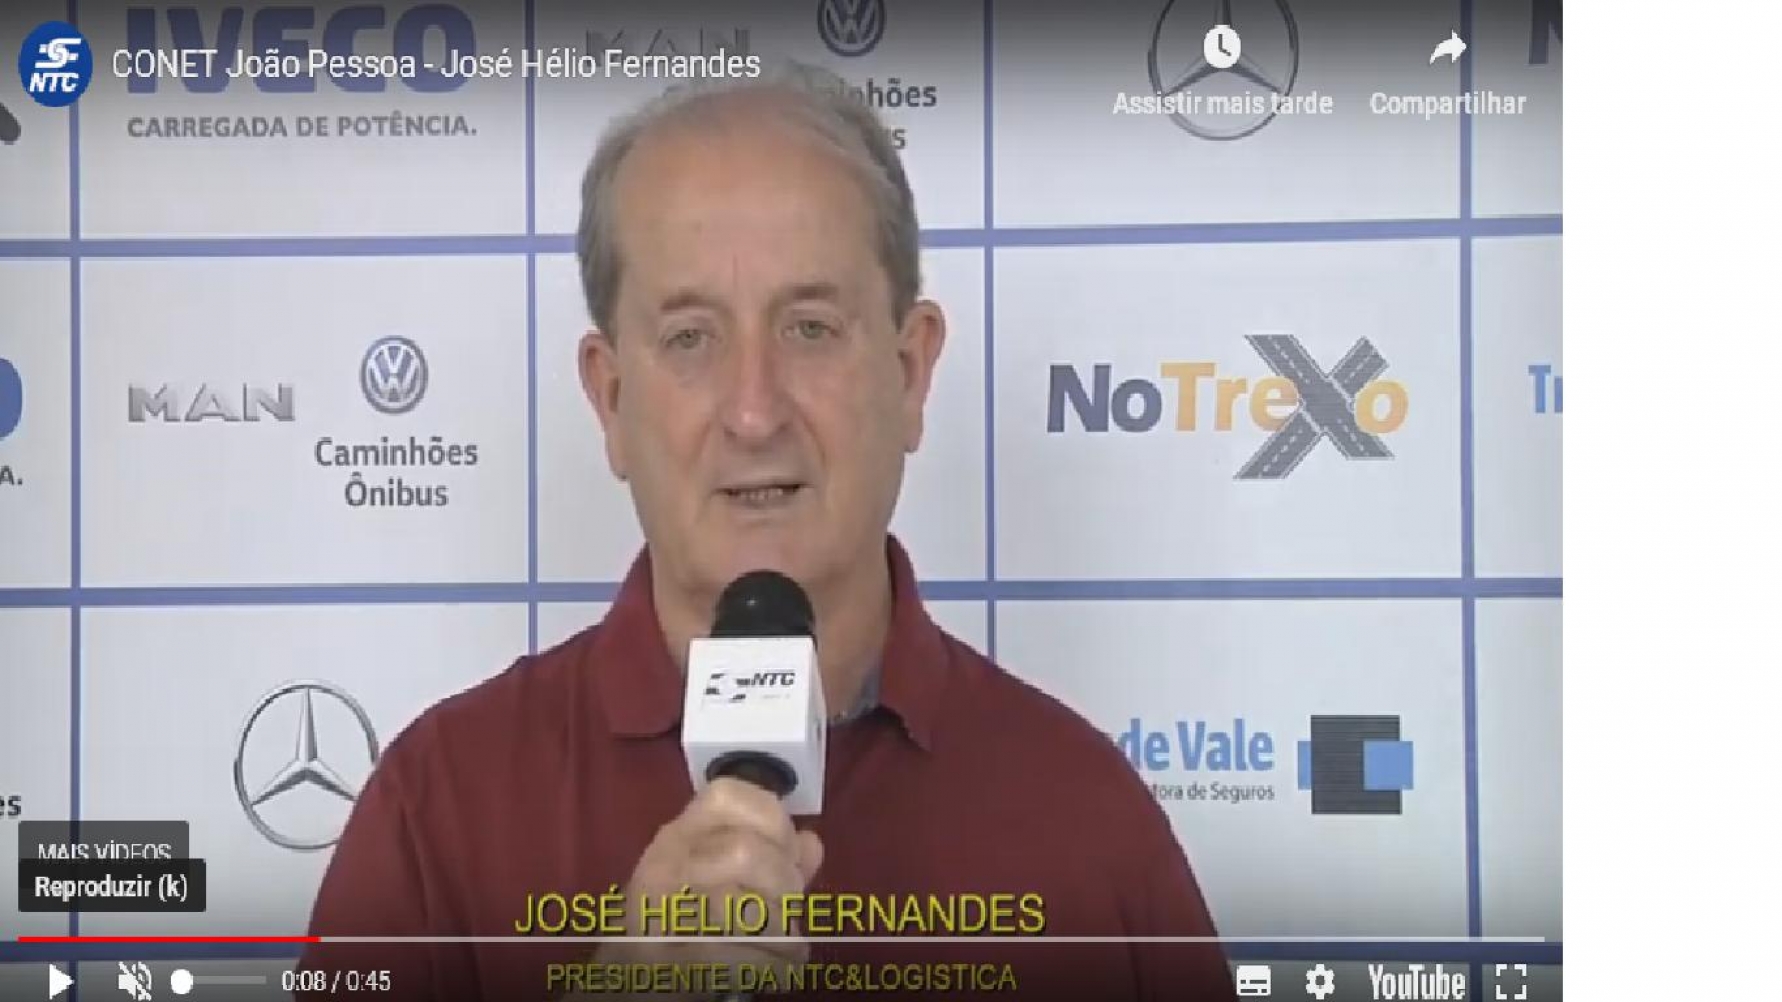 CONET João Pessoa - José Hélio Fernandes